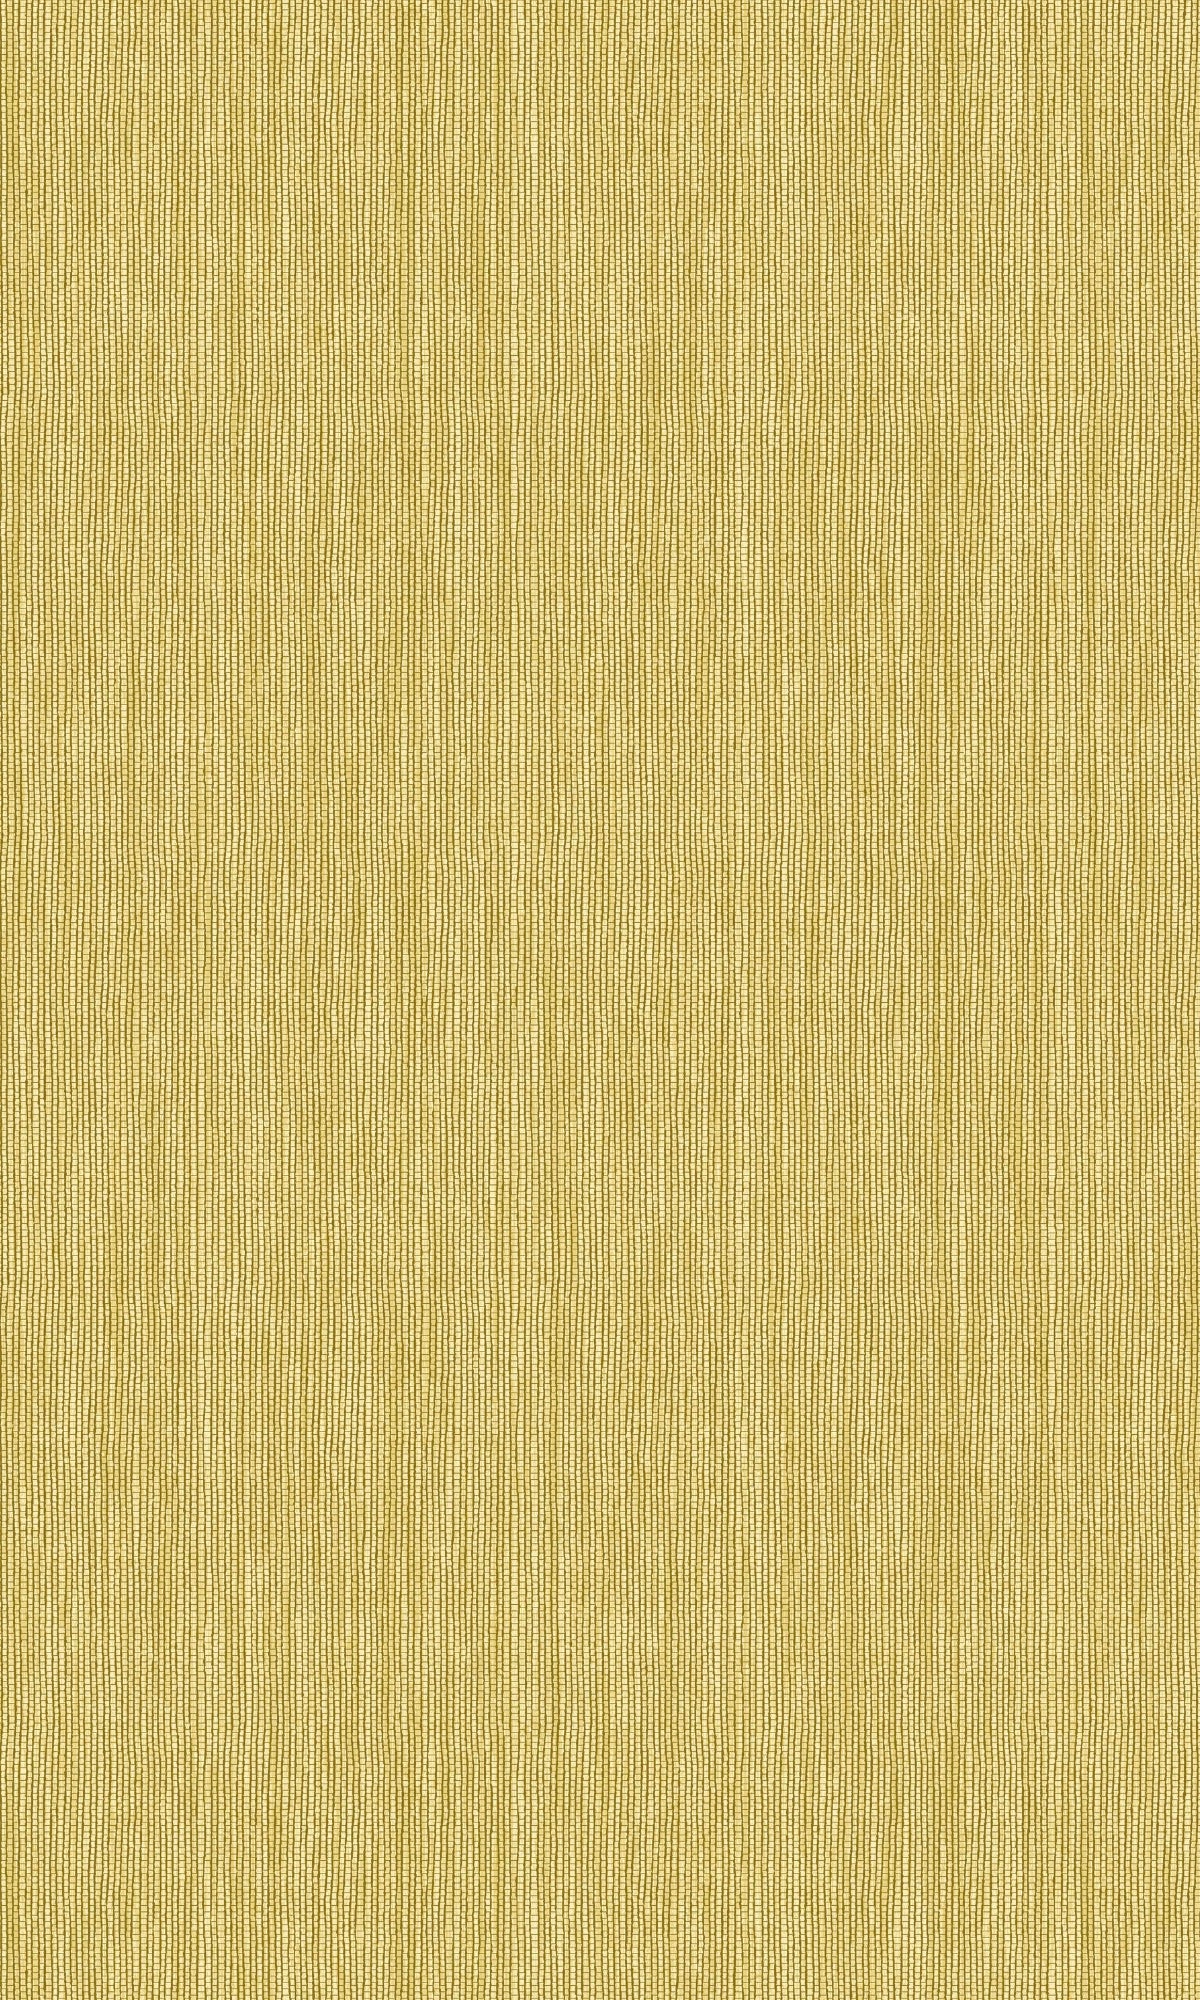 Citron Plain Textile Textured Wallpaper R9068